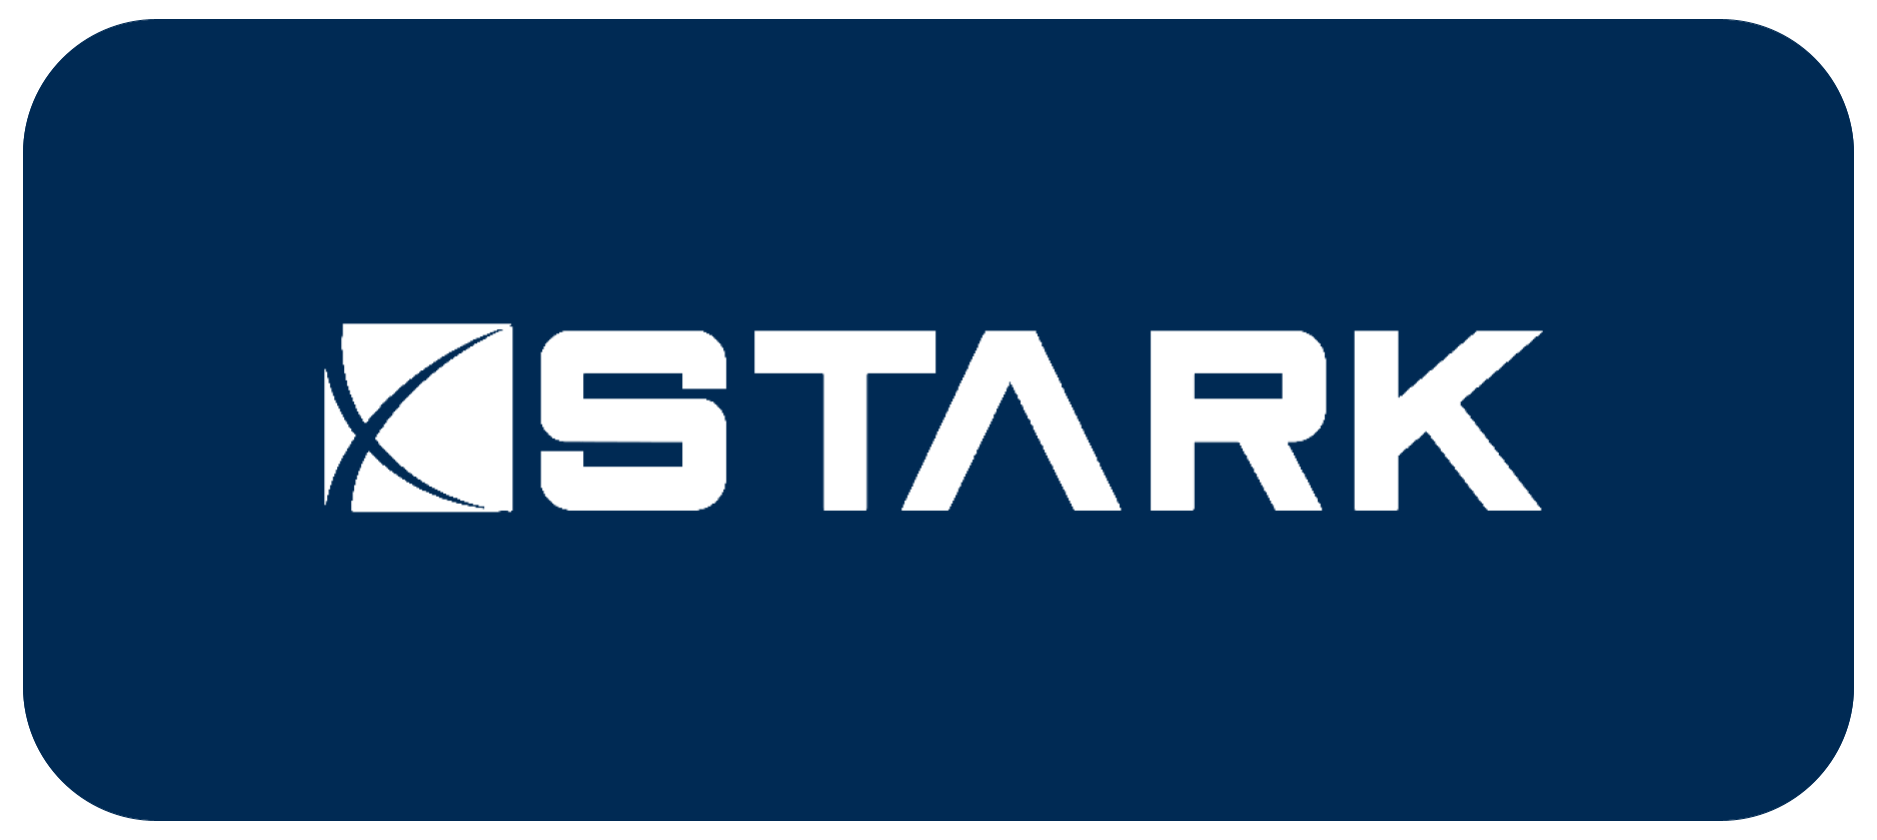 Stark partner logo - visual for website